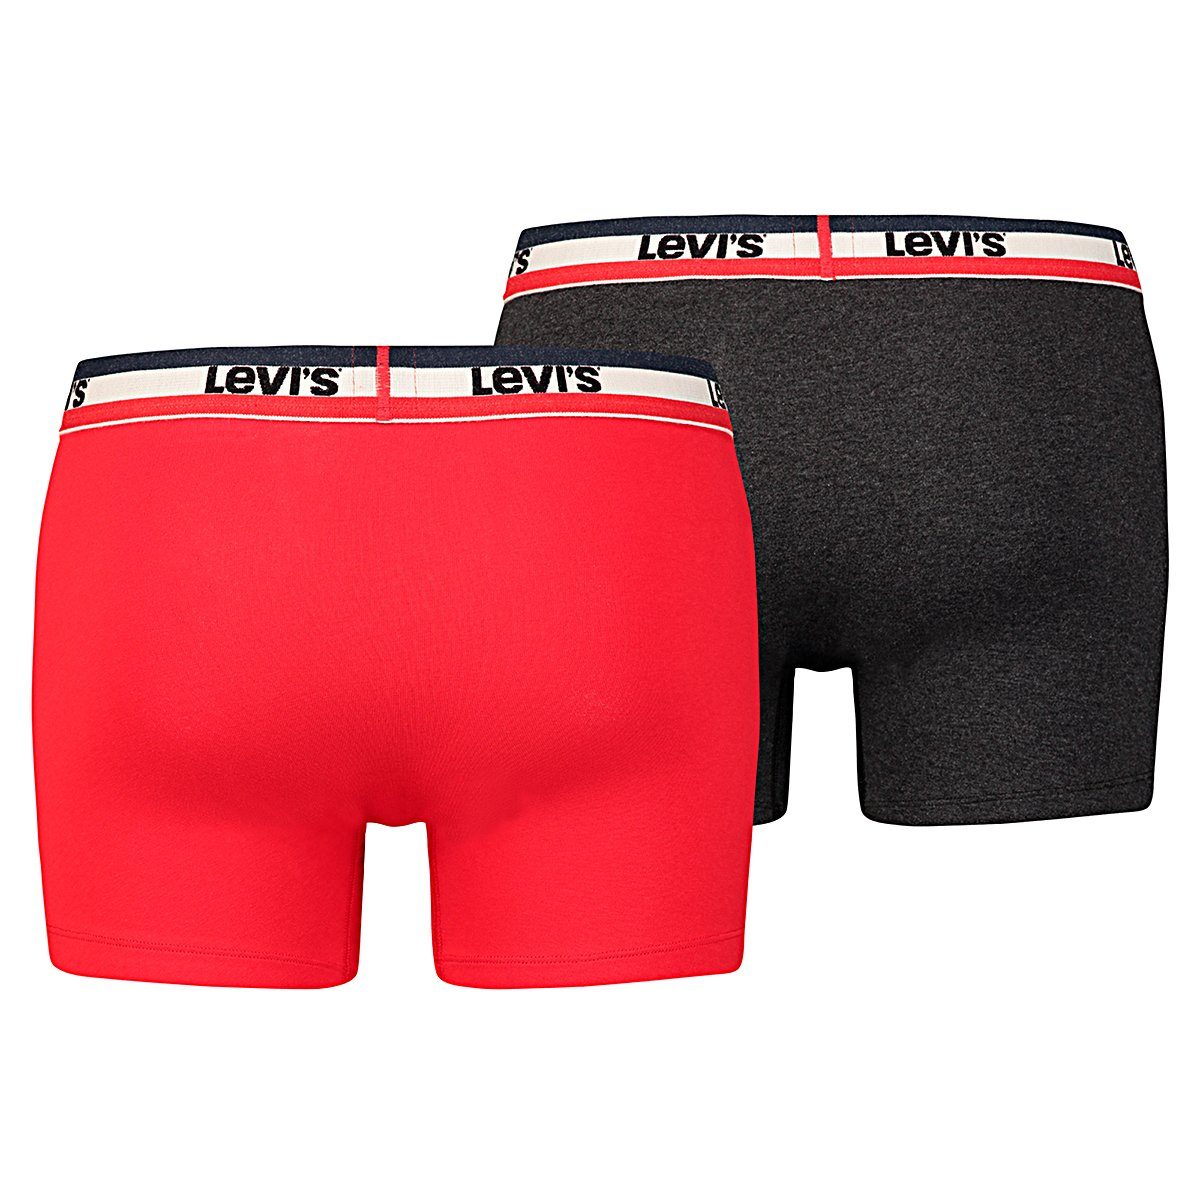 Levi's® Boxershorts Levis Boxer Brief 2P - Red 786 Black 